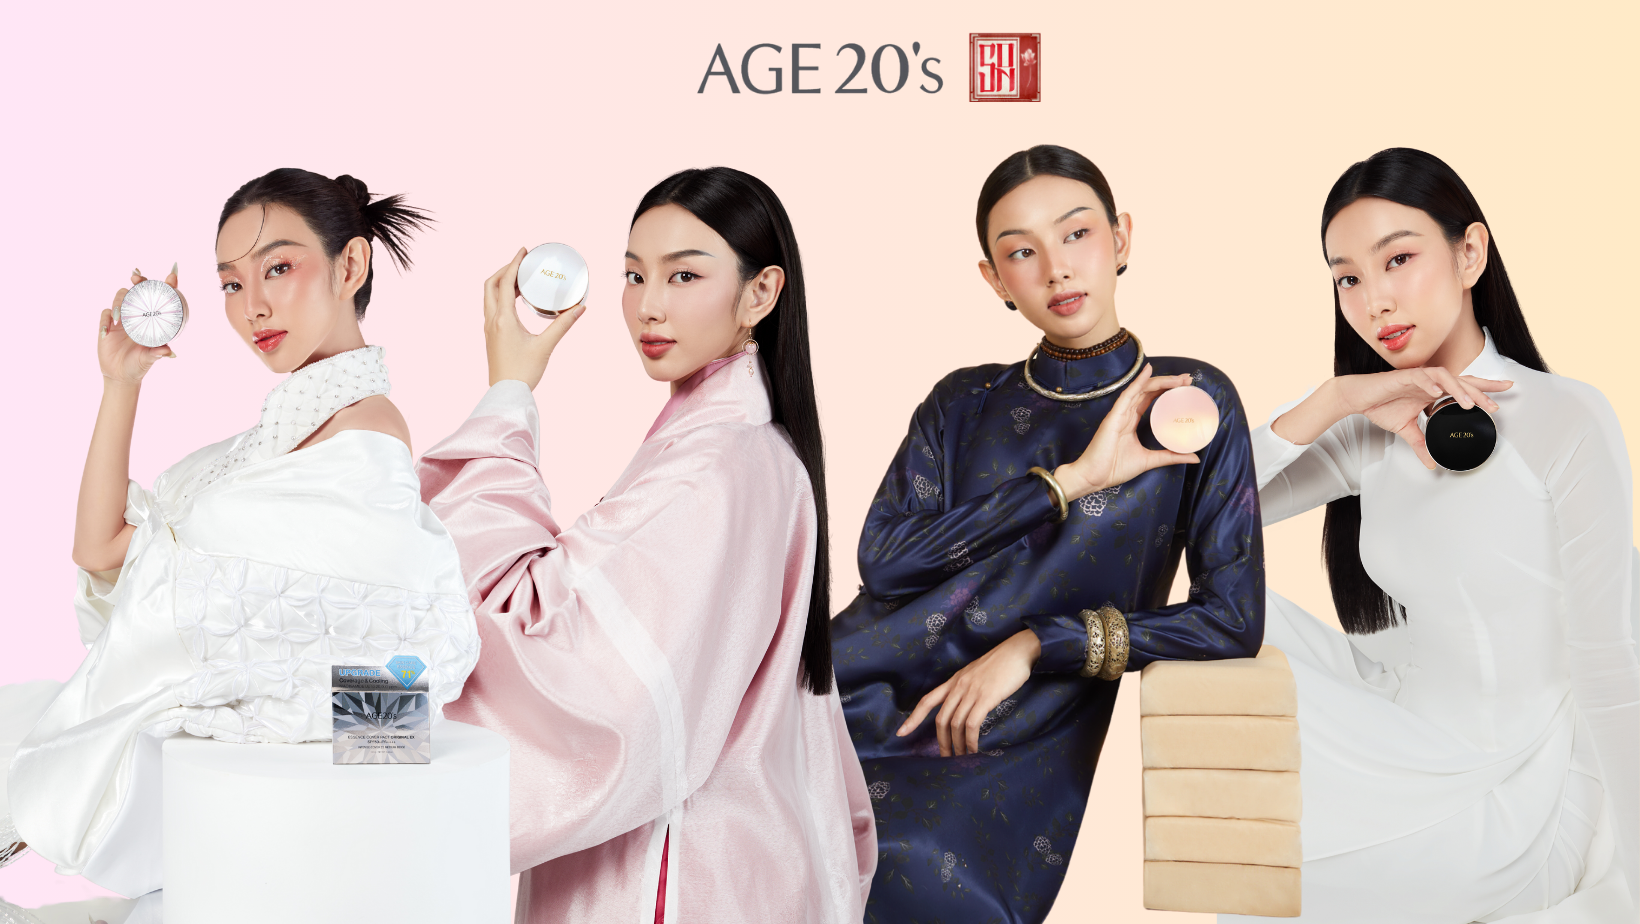 Campaign 'SON' đồng hành cùng 'phụ nữ và thời đại' của nhãn hàng AGE20'S - ảnh 1